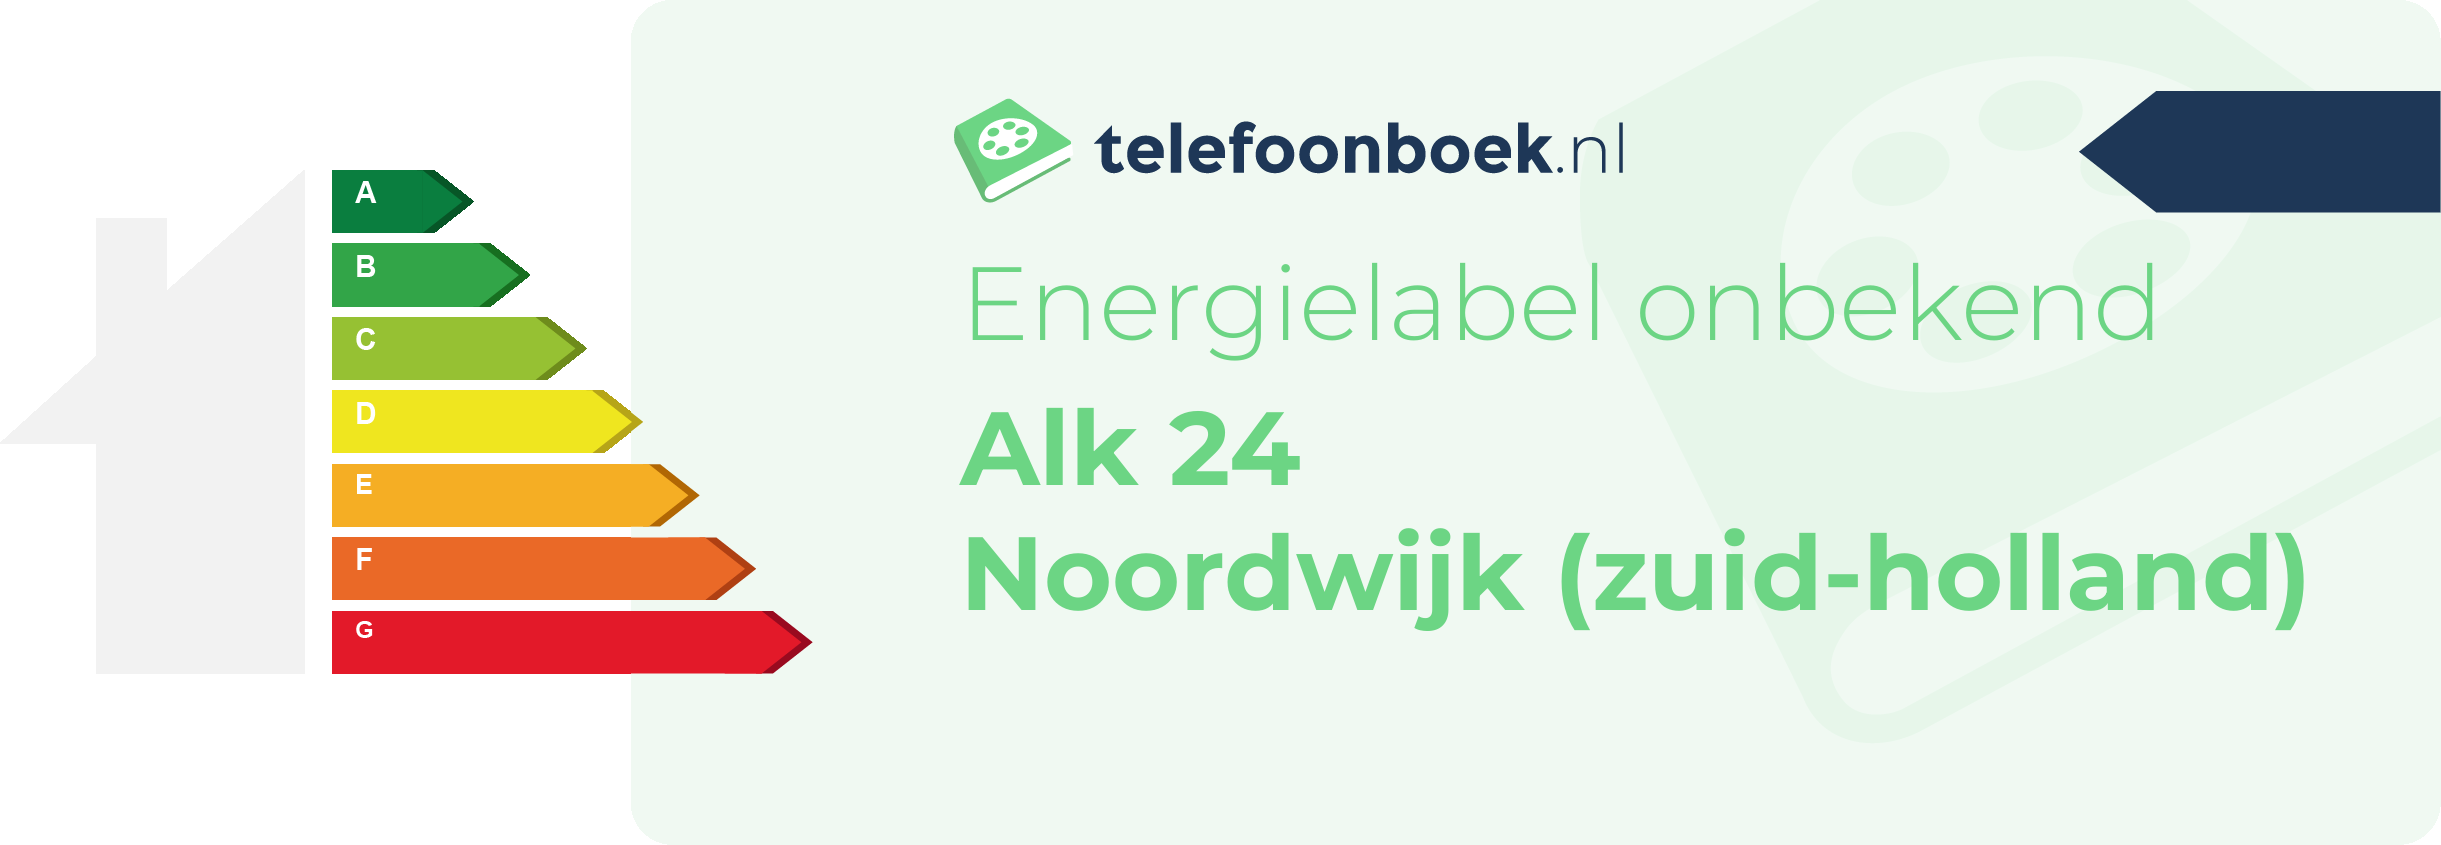 Energielabel Alk 24 Noordwijk (Zuid-Holland)